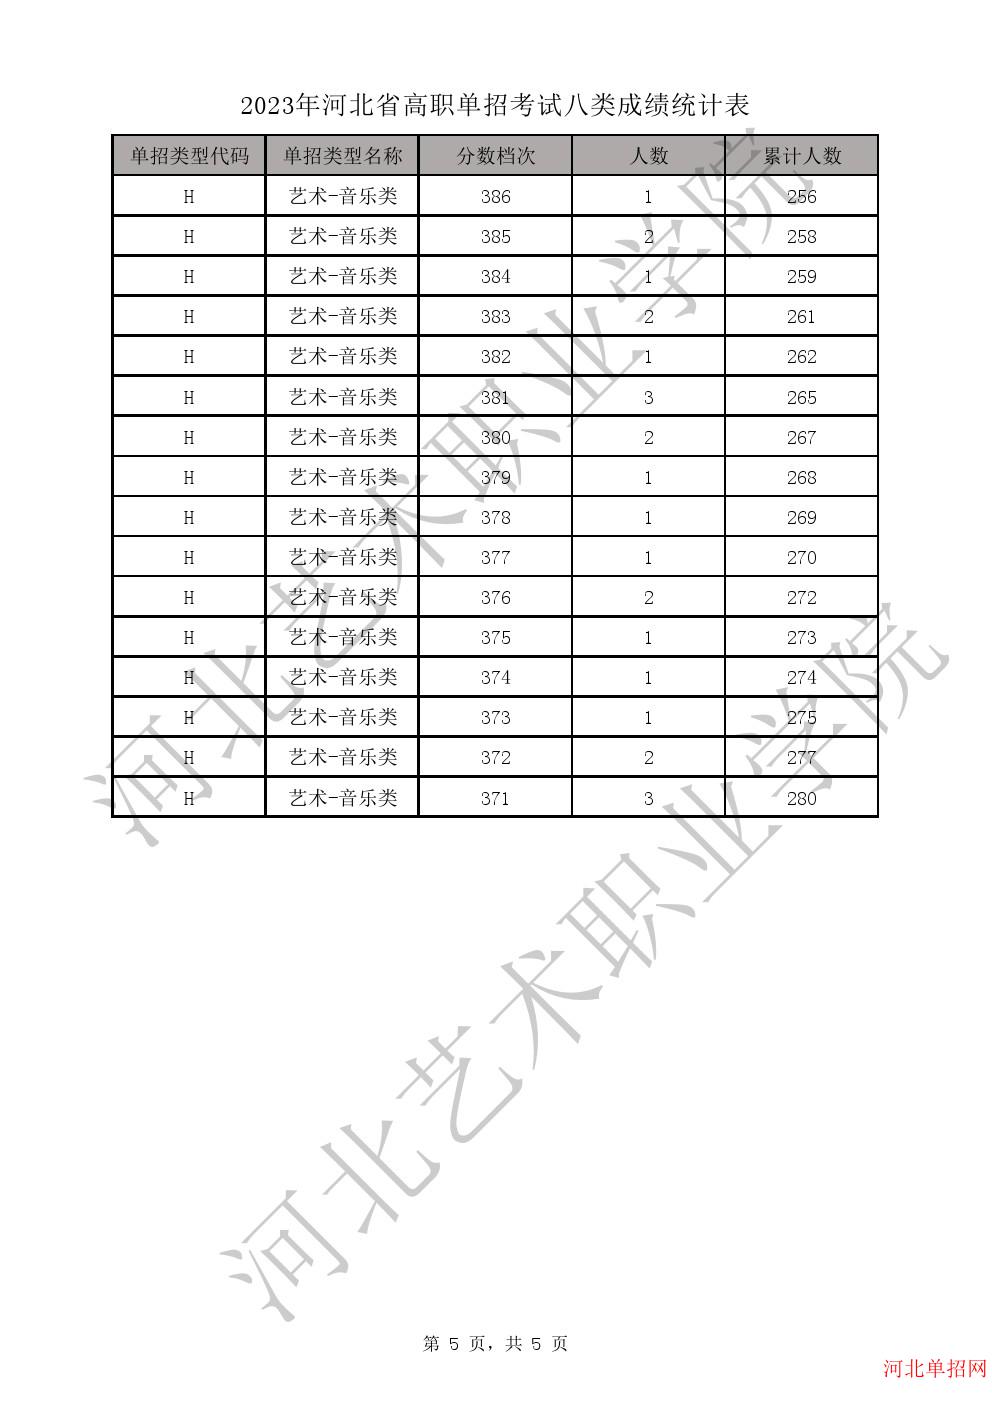 2023年河北省高职单招考试八类一分一档表-H艺术-音乐类一分一档表 图5